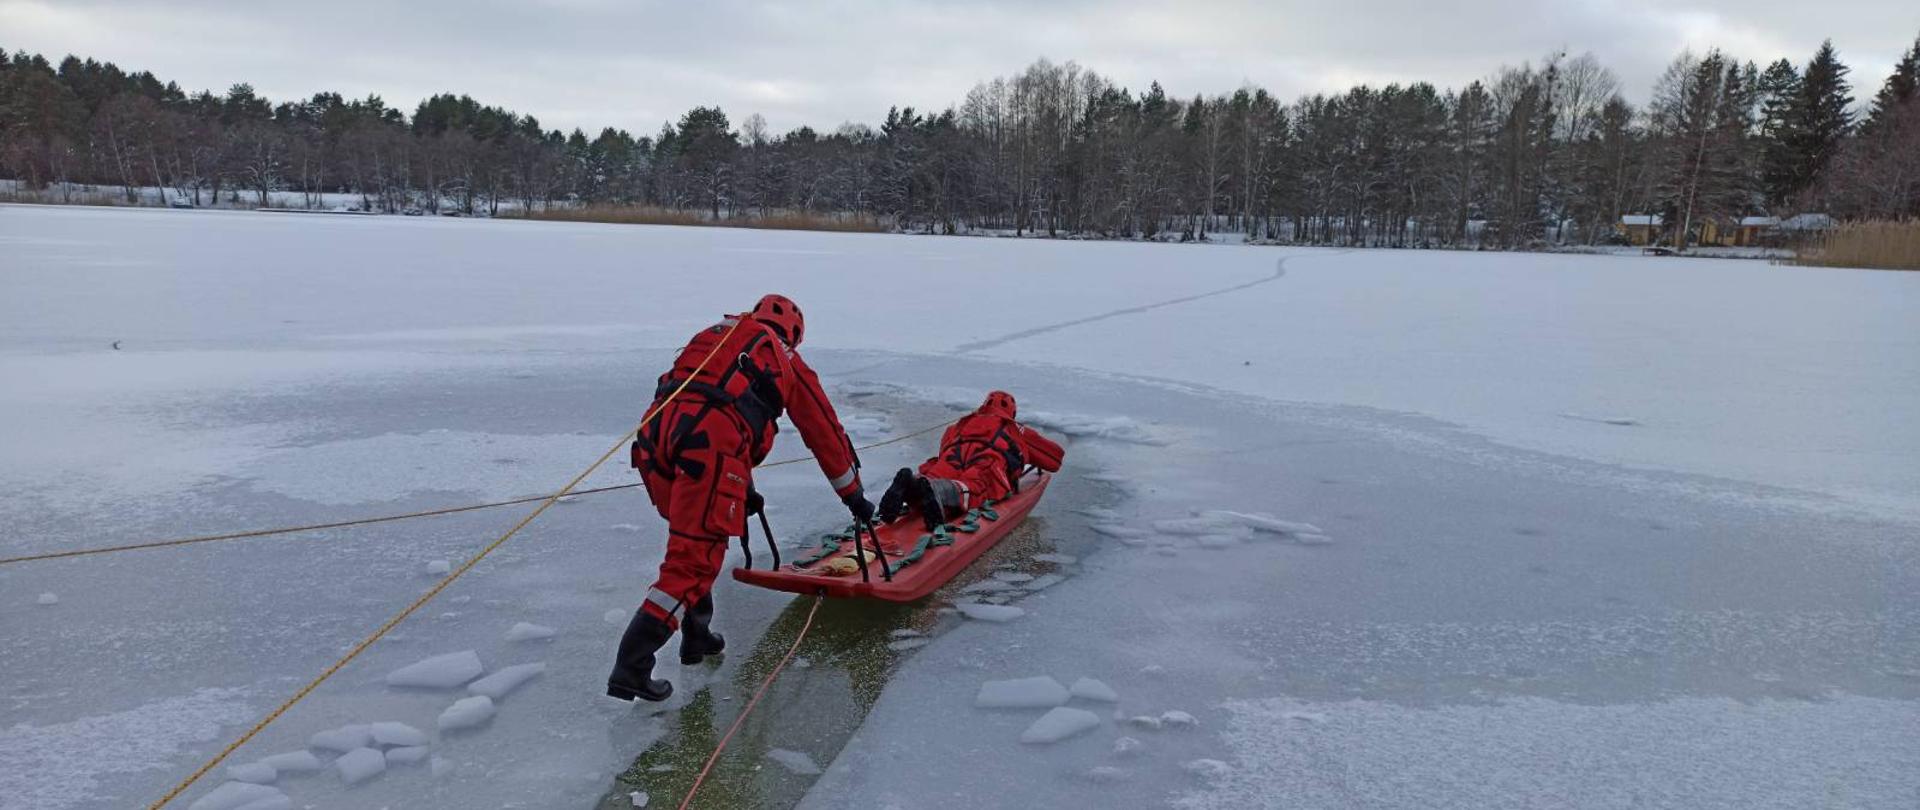 Strażacy w suchych skafandrach ratowniczych ćwiczą elementy ratownictwa na lodzie z wykorzystaniem sań wodno- lodowych. Strażacy są asekurowani z brzegu linami.